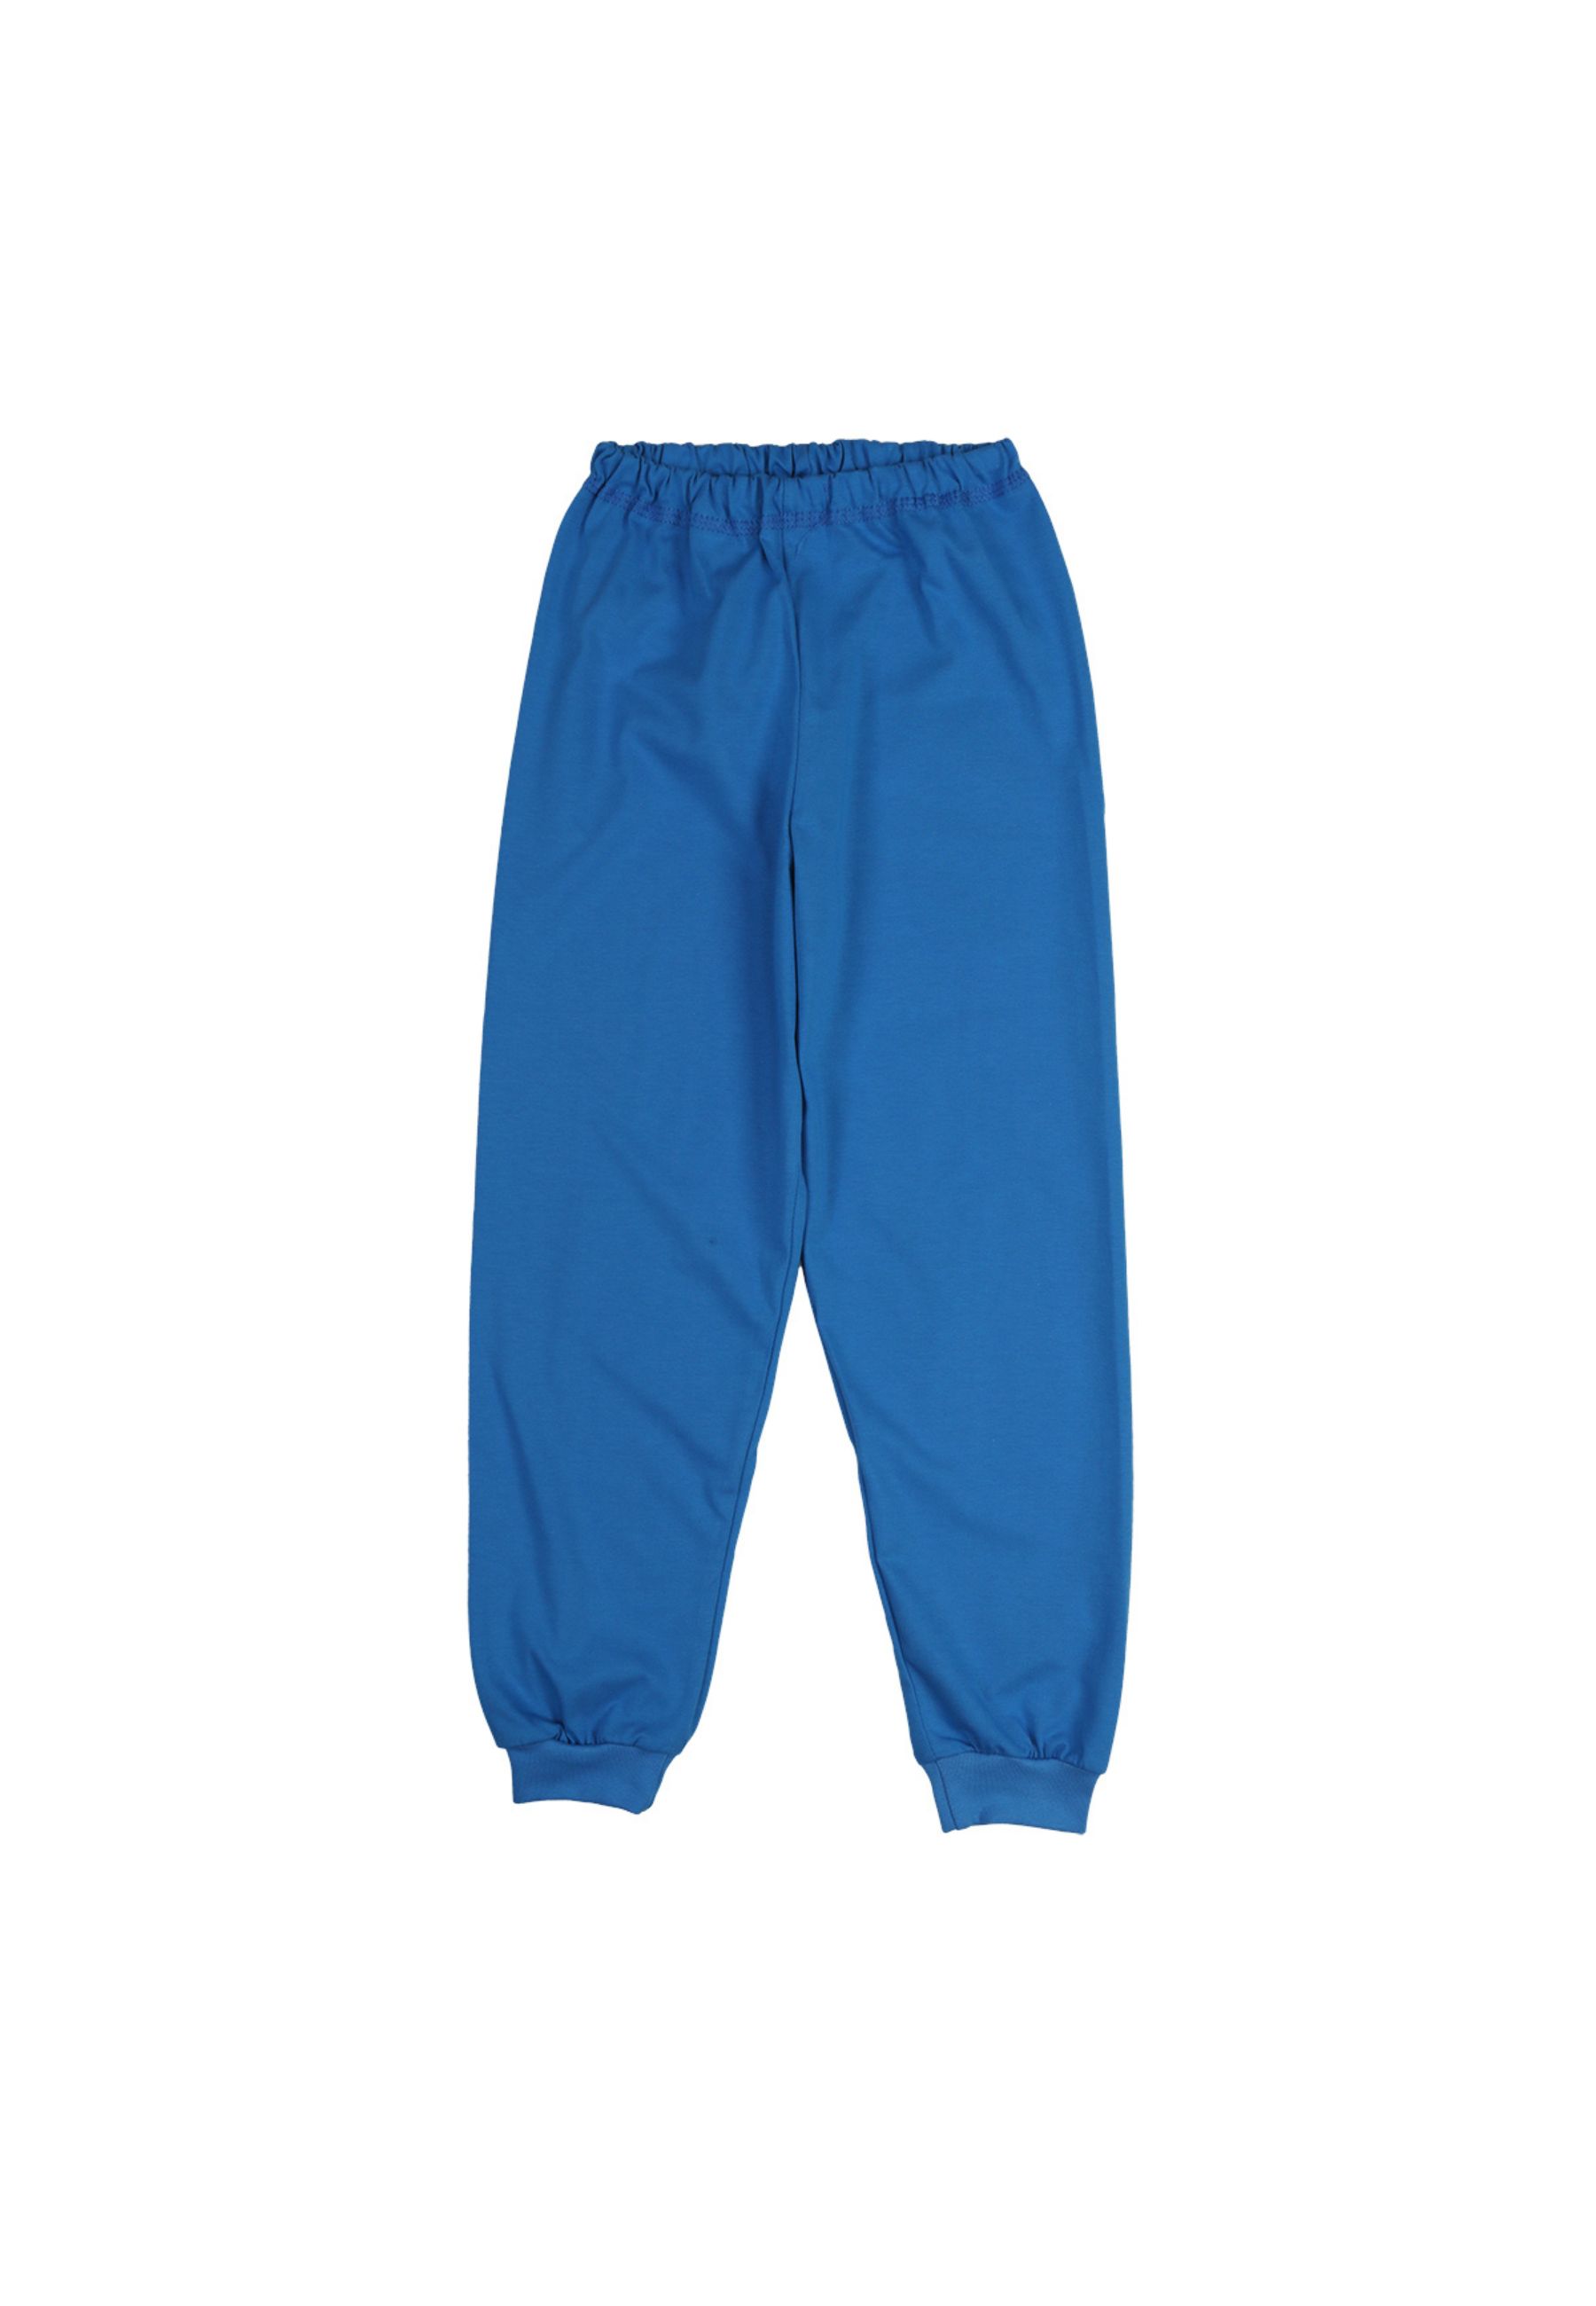 Tup-Tup, piżama dziecięca, PREMIUM, 100% bawełna niebieska